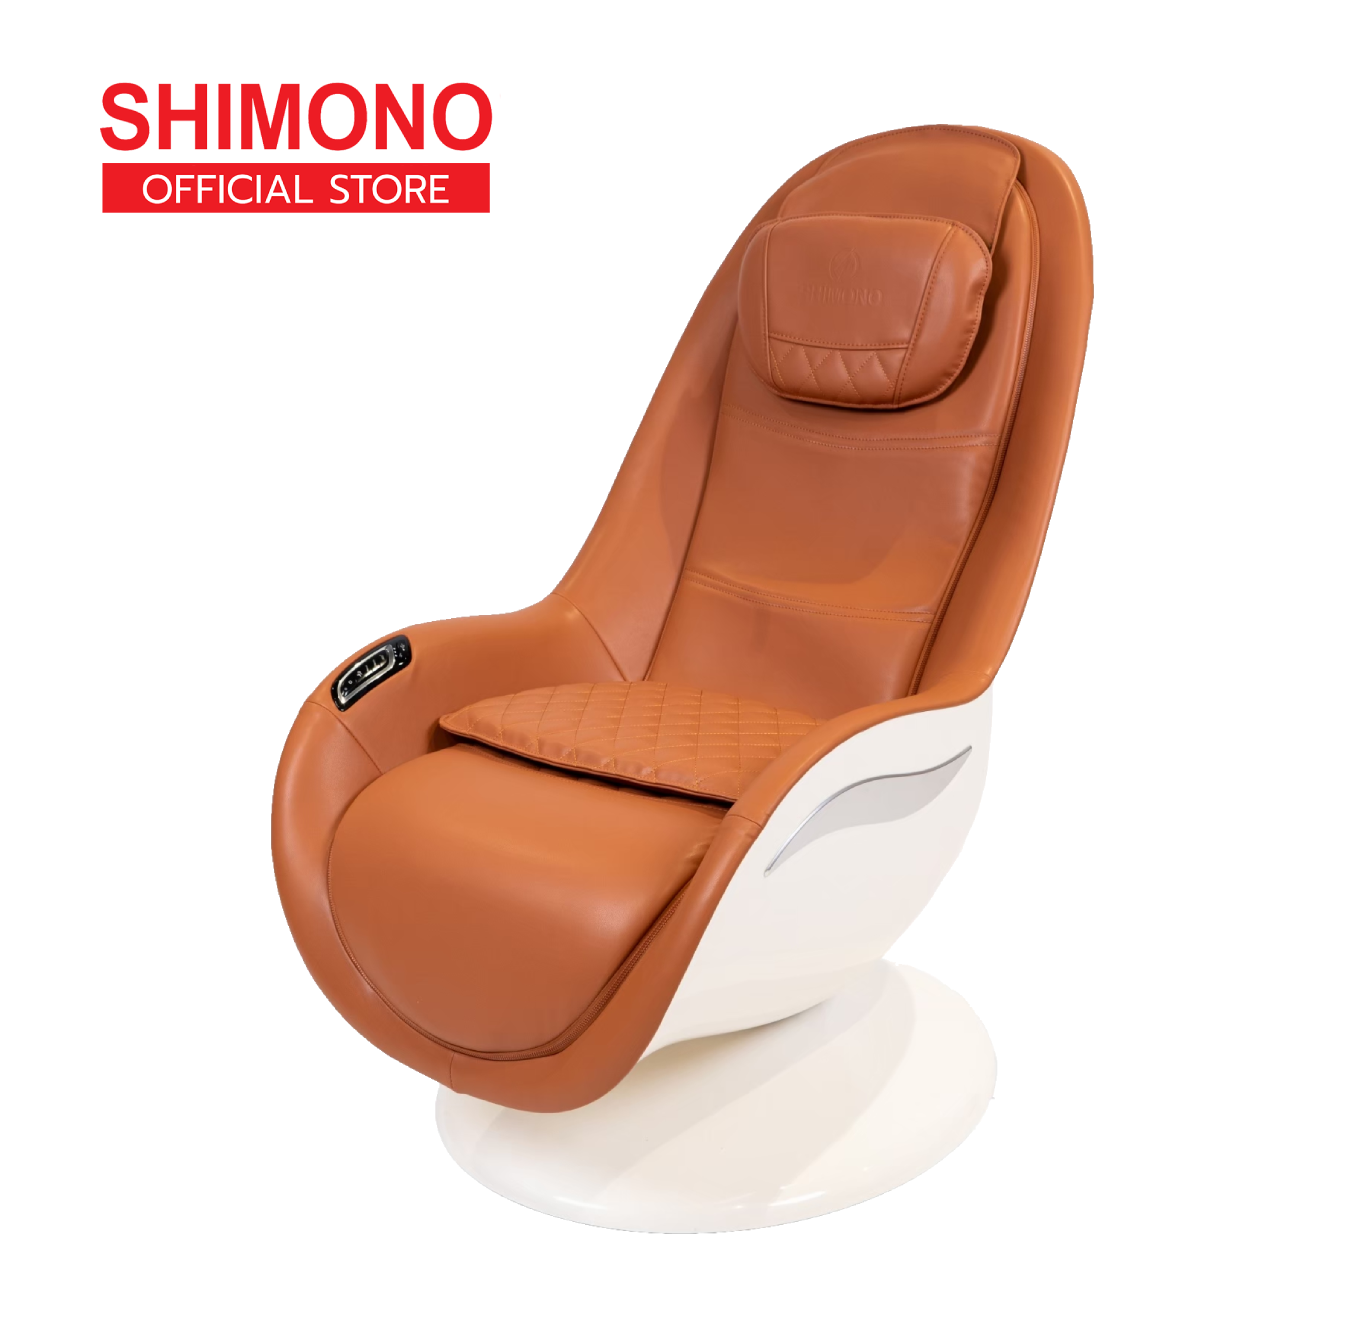 Shimono เก้าอี้นวดไฟฟ้า ICuddle